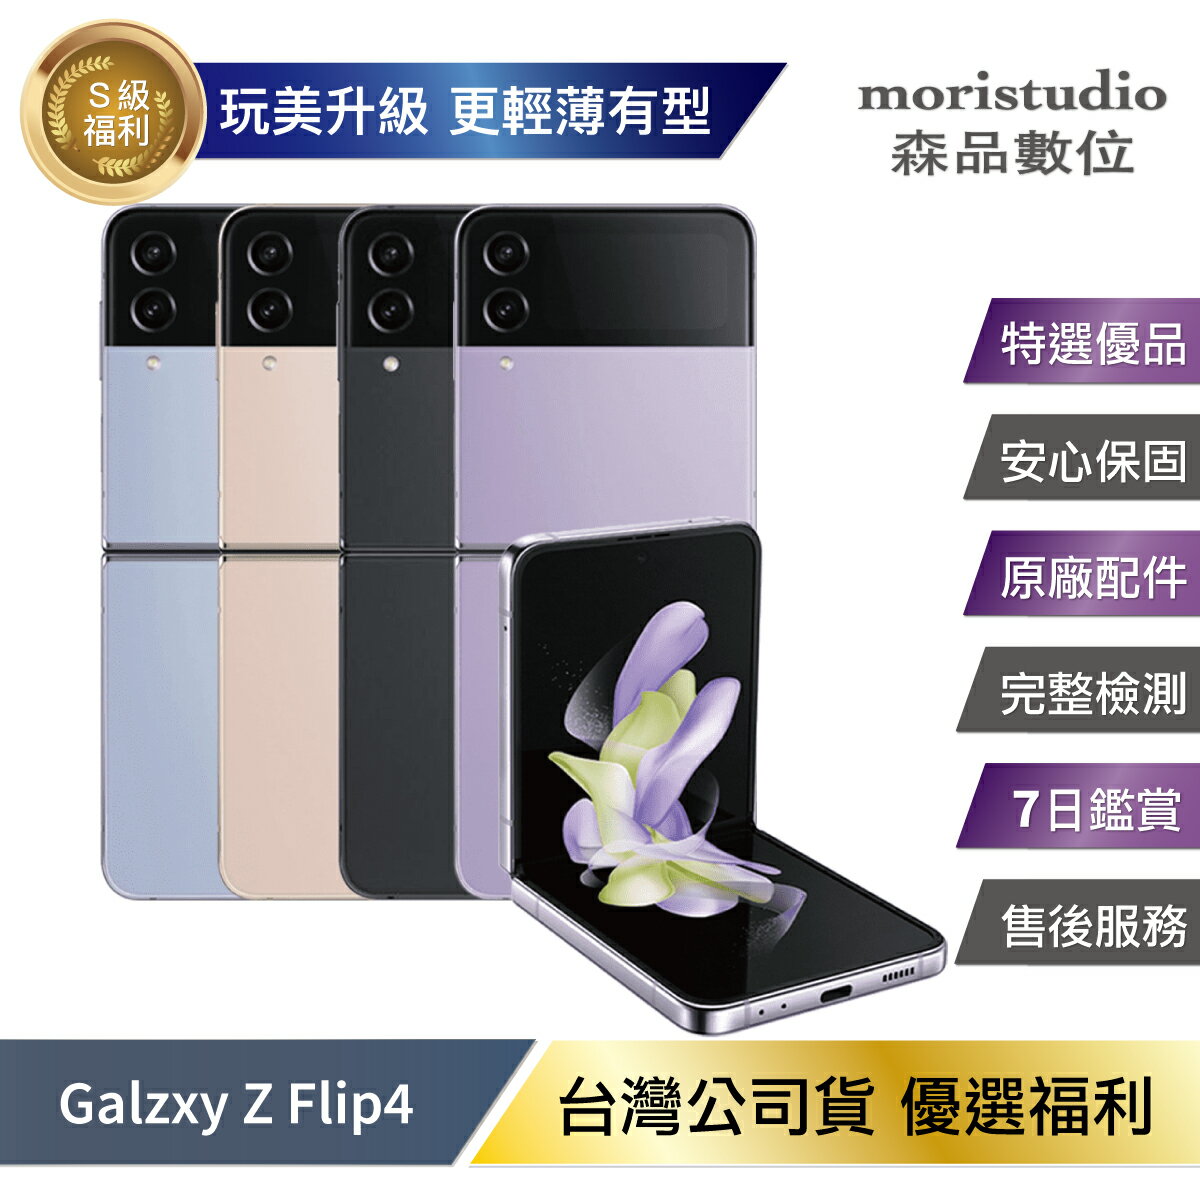 超值優惠台灣公司貨】SAMSUNG Galaxy Z flip4 (8G/256G) 優選福利品